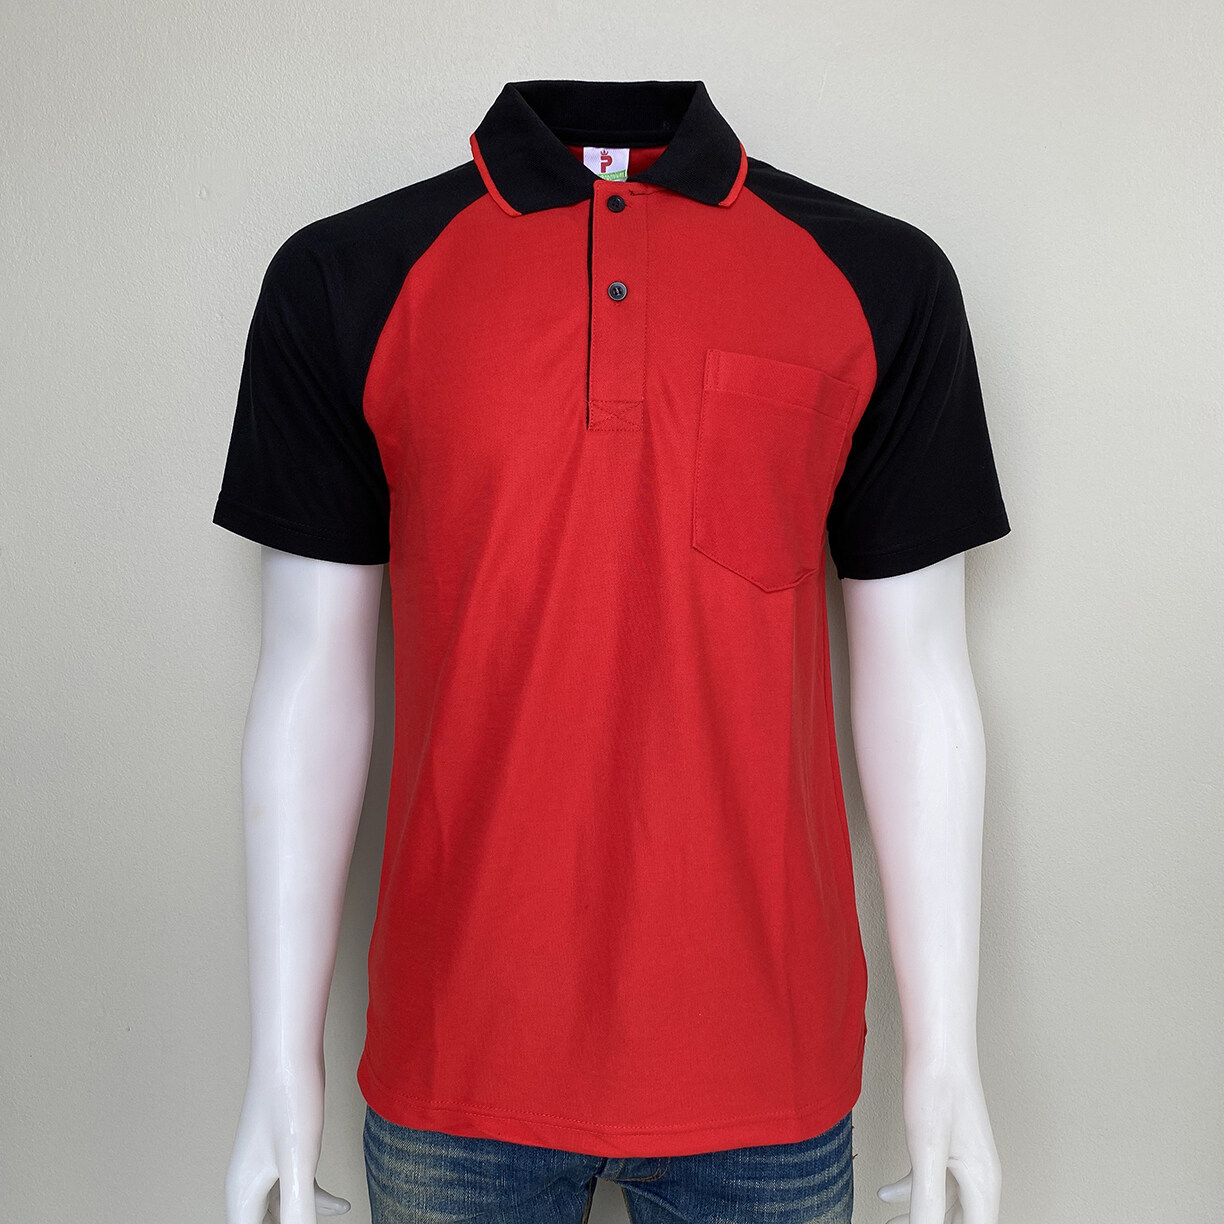 เสื้อโปโล Polo Shirt Plain Polo T Shirt Soft Pique Short Sleeve Tops For Men Side Vents สีแดง แขนดำเนื้อผ้านุ่ม สวมใส่สบาย ซึ่งมีทั้งแบบชาย และแบบผู้หญิง